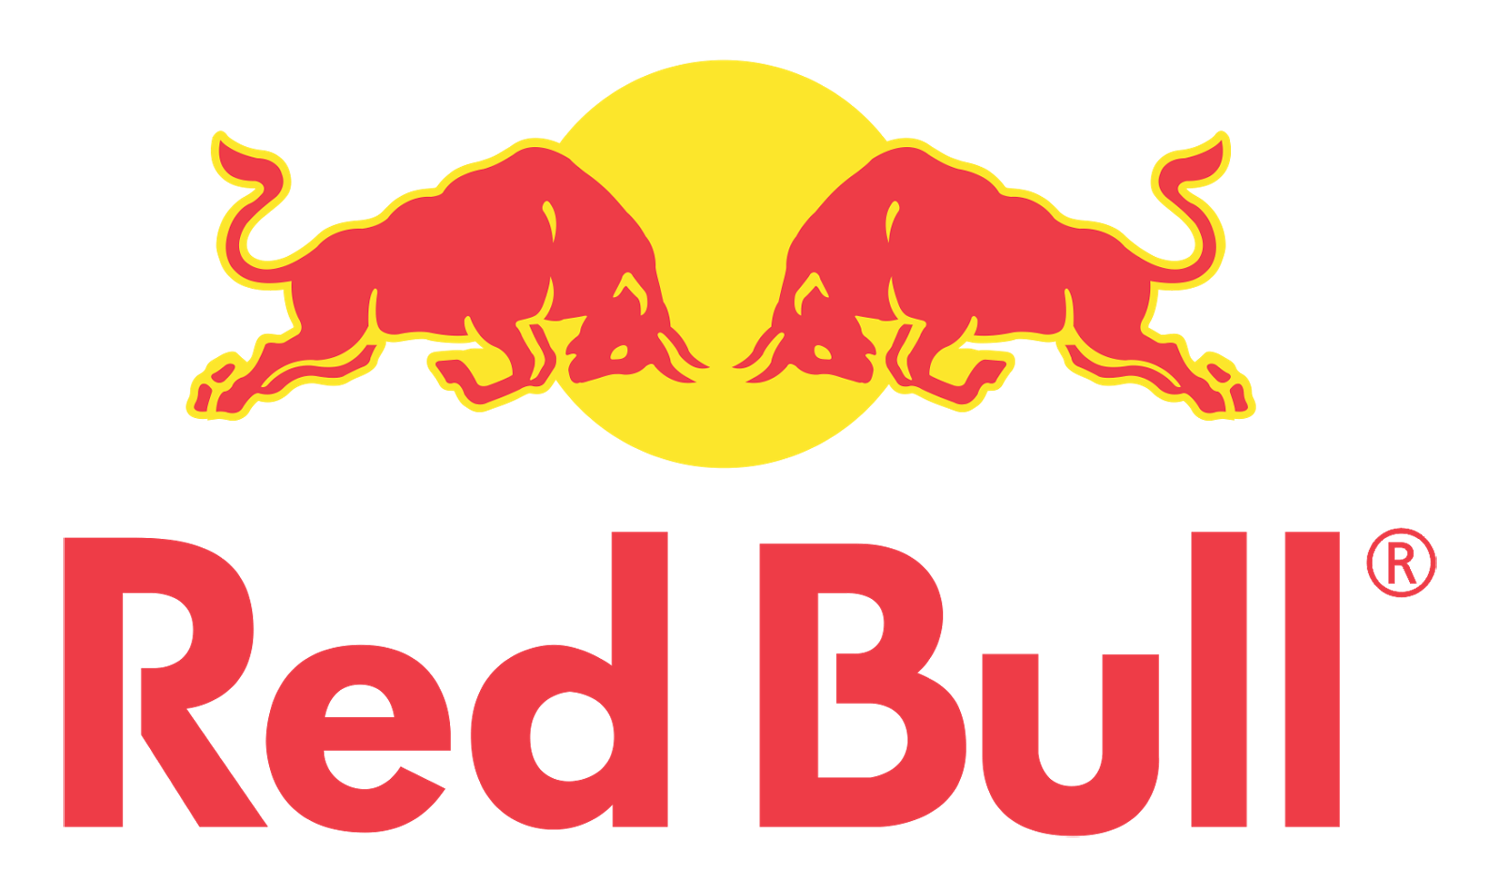 Bull Logo - Red-Bull-logo - Everest Marathon